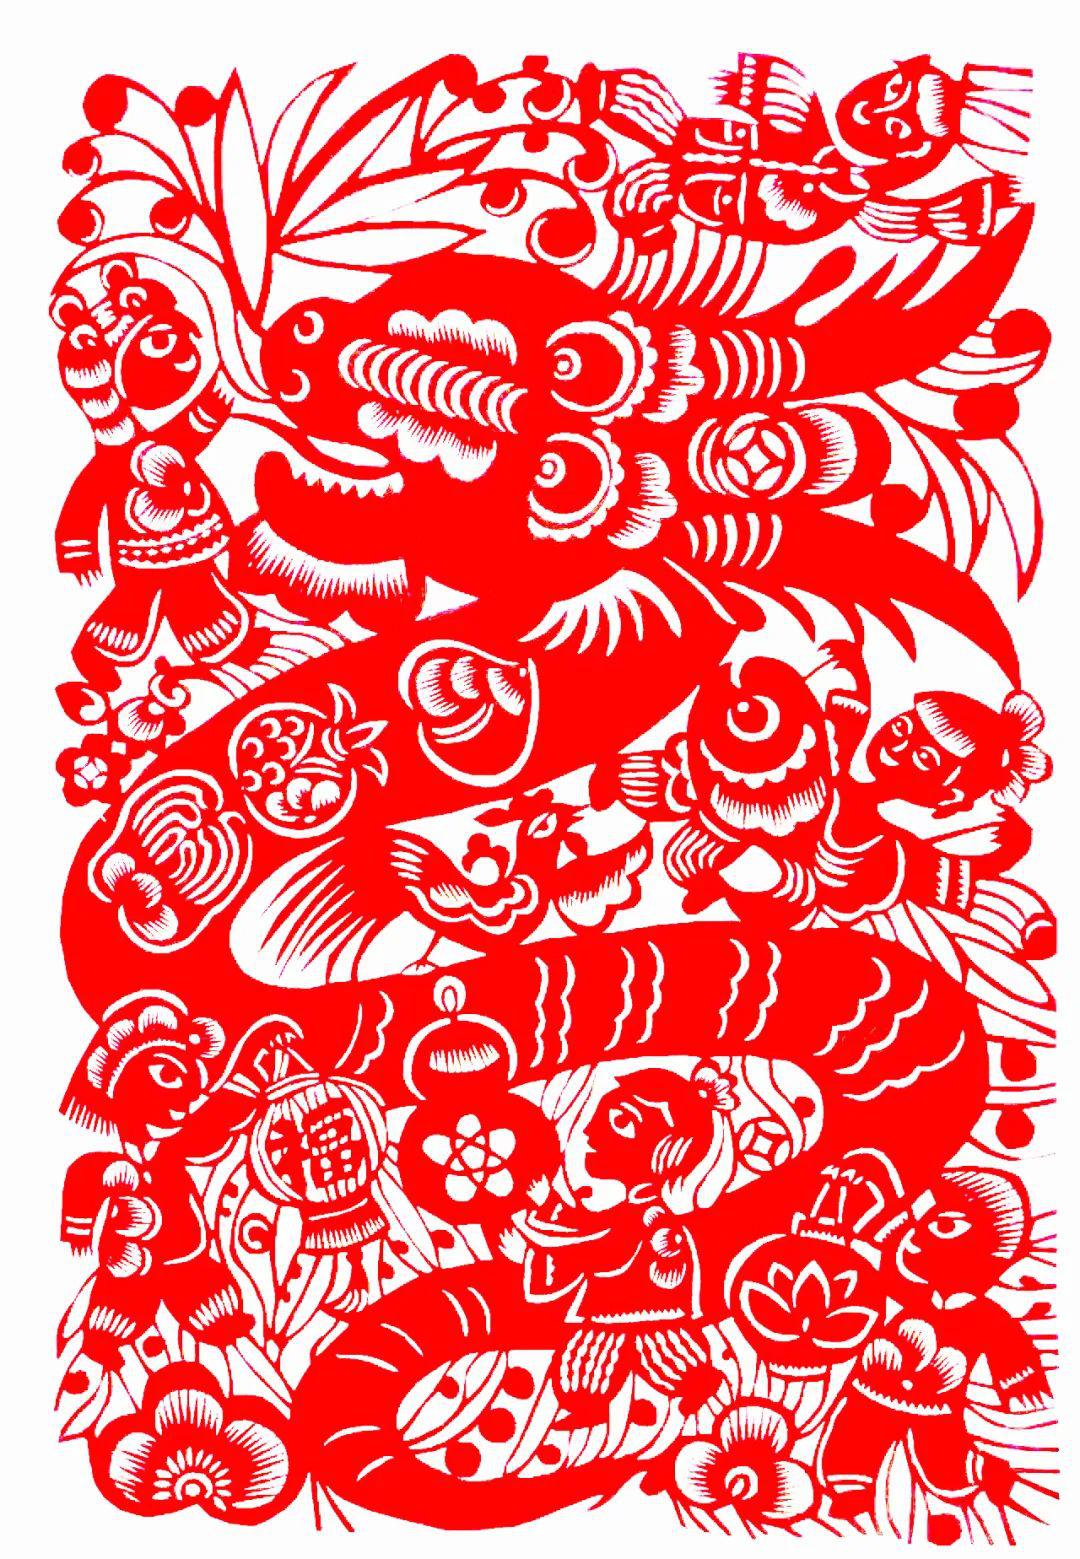 中国民间剪纸微刊《百年献瑞迎新年》全国龙文化剪纸精品展览 图46